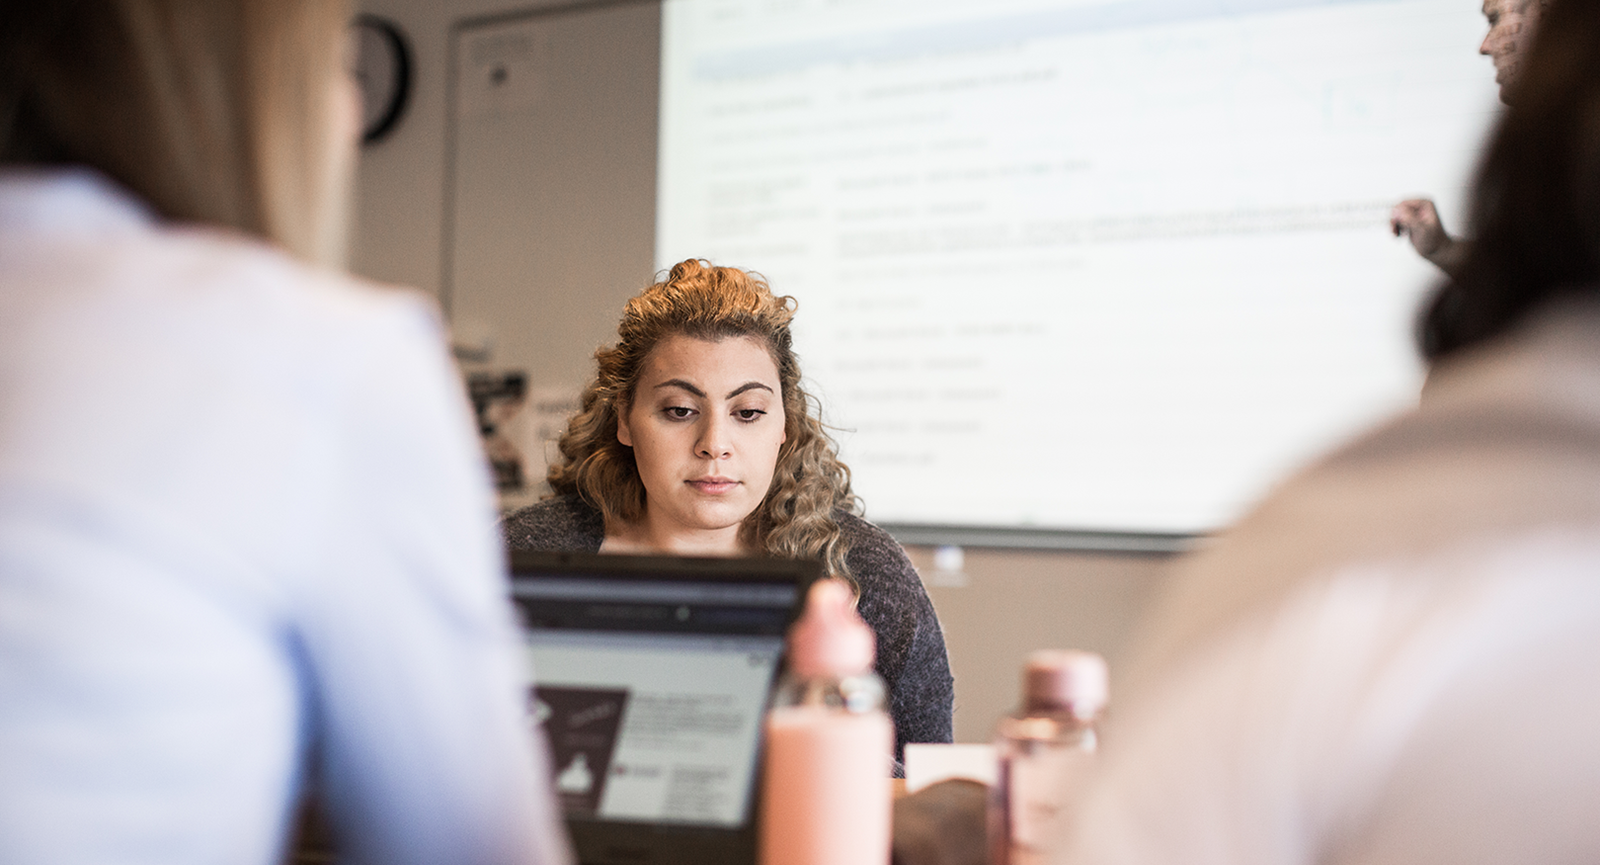 Studerende kigger ned i skræm, mens der bag hende står en person og underviser ved en tavle oplyst af en projektor